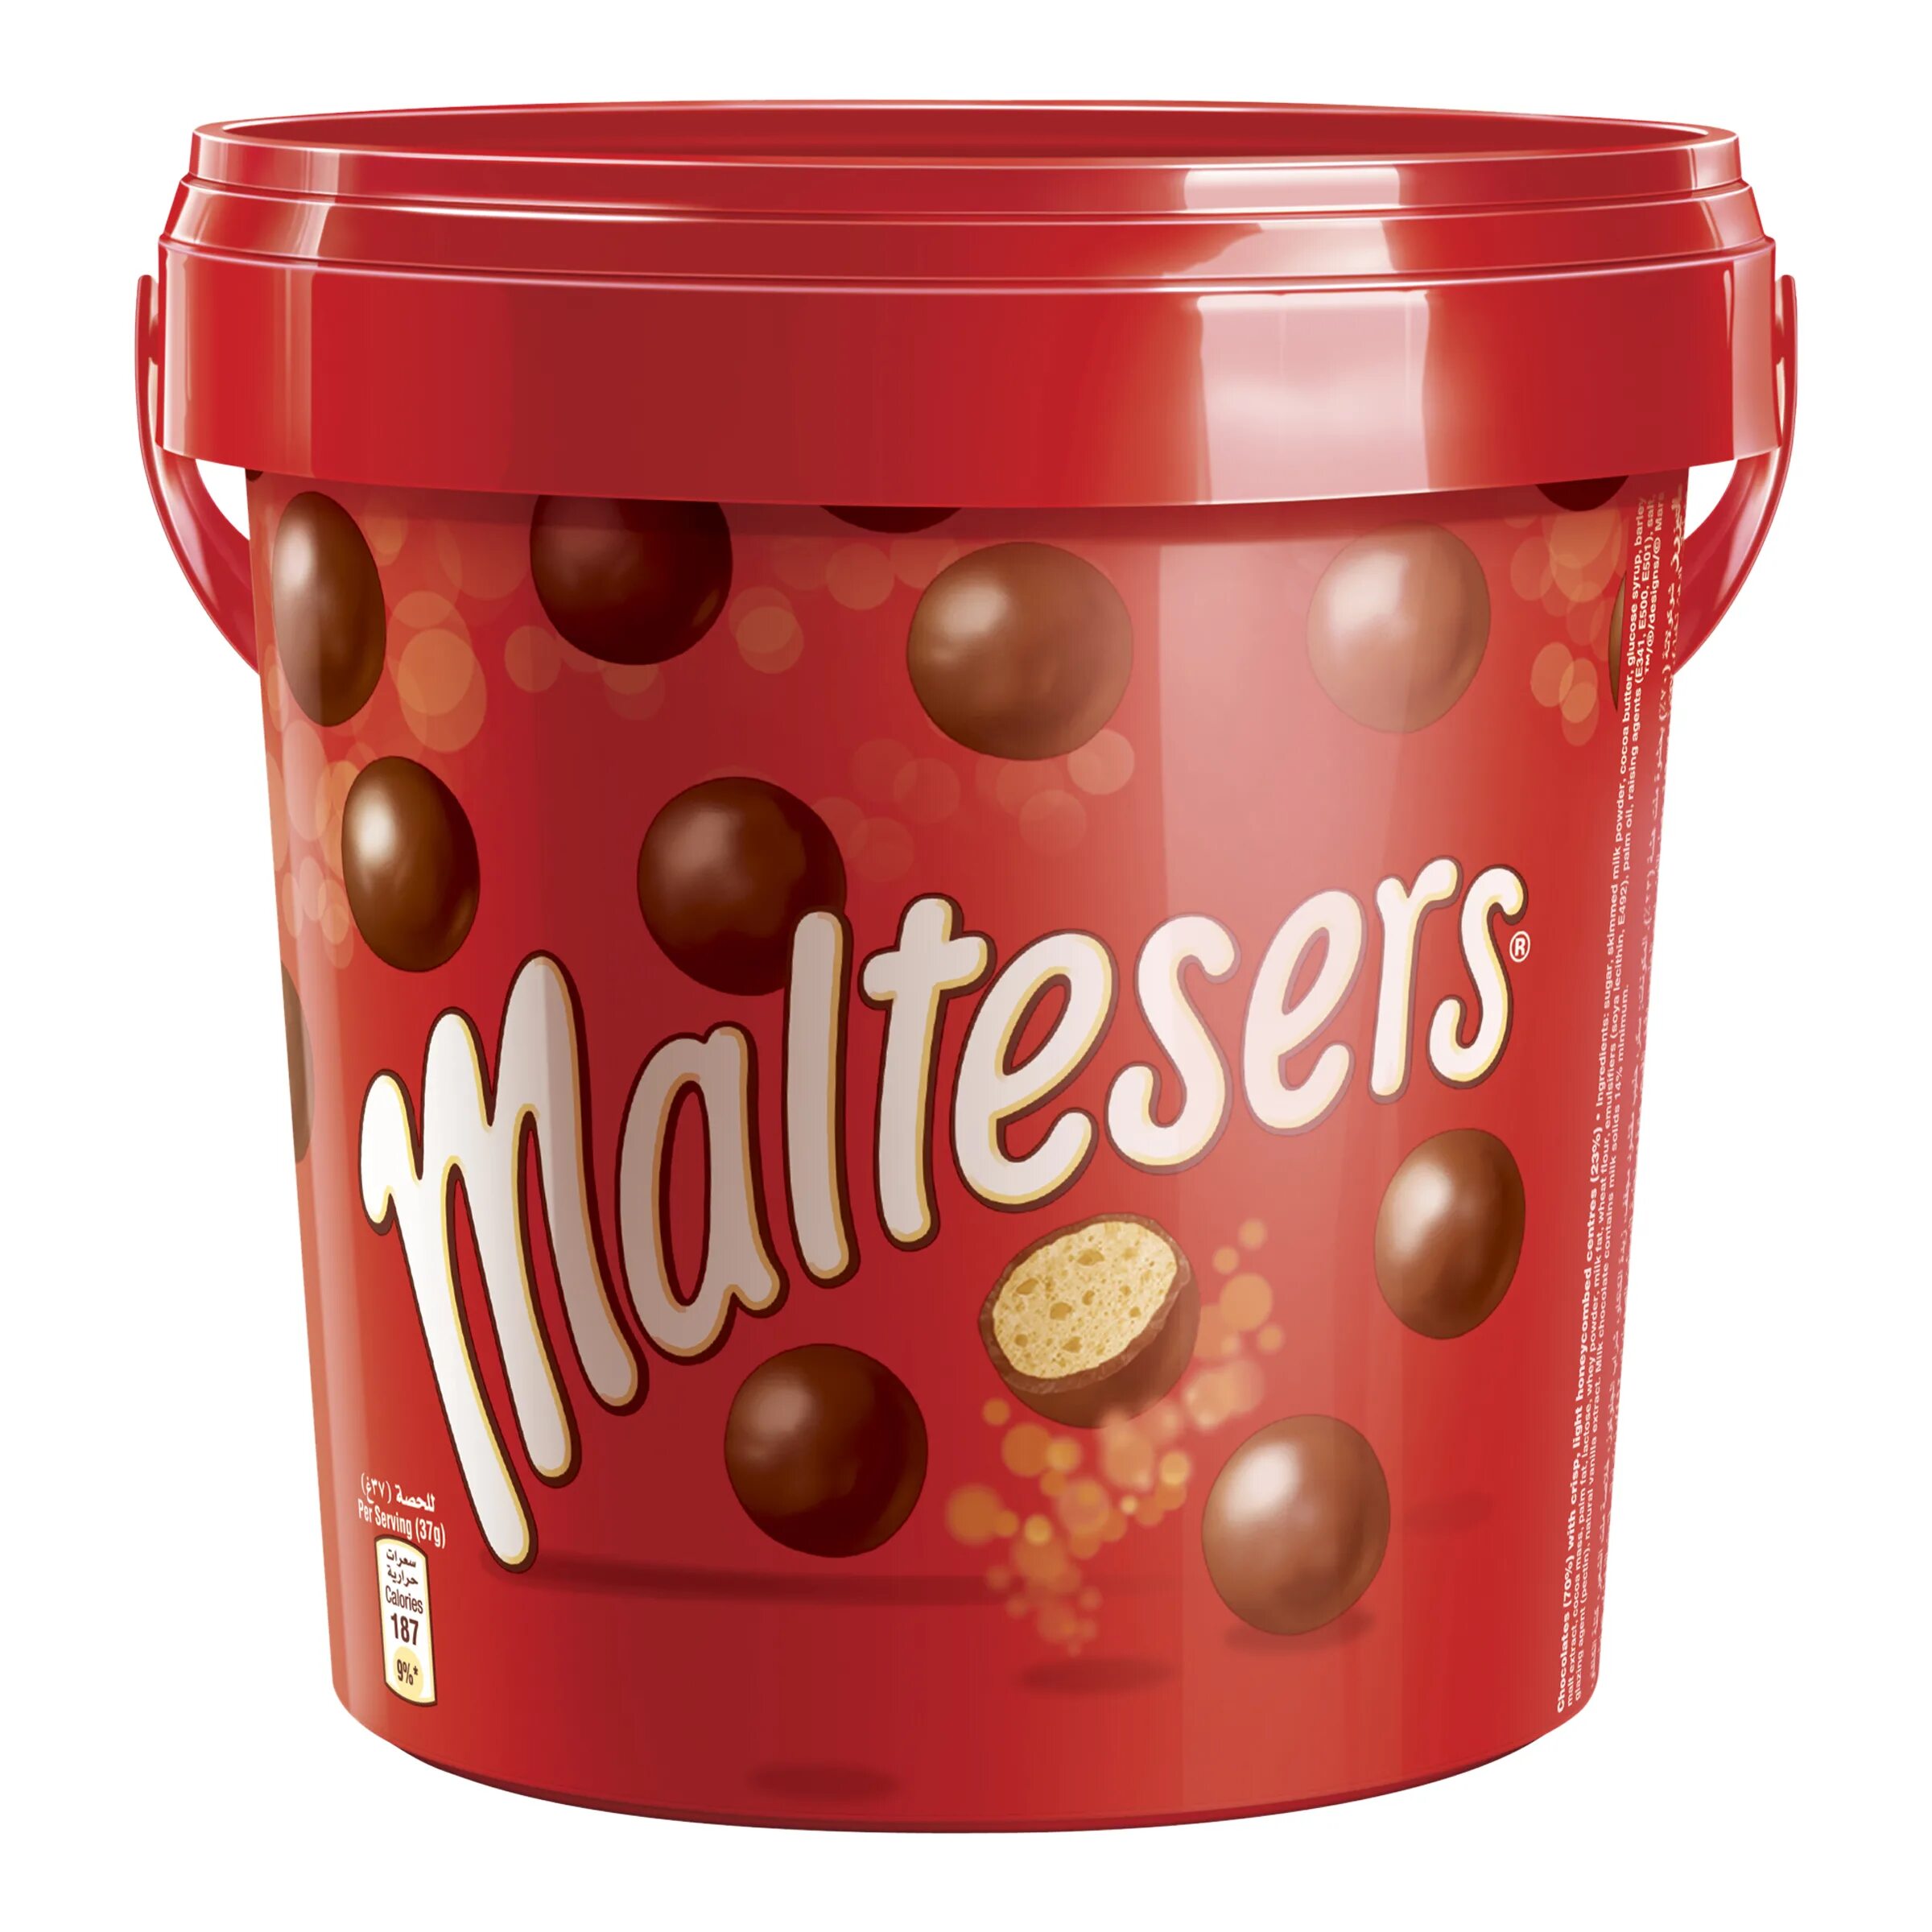 Maltesers шоколадные шарики 37 гр. Конфеты шоколадные шарики Мальтизерс. Maltesers драже шоколадные шарики. Конфеты Mars Maltesers. Конфеты maltesers купить